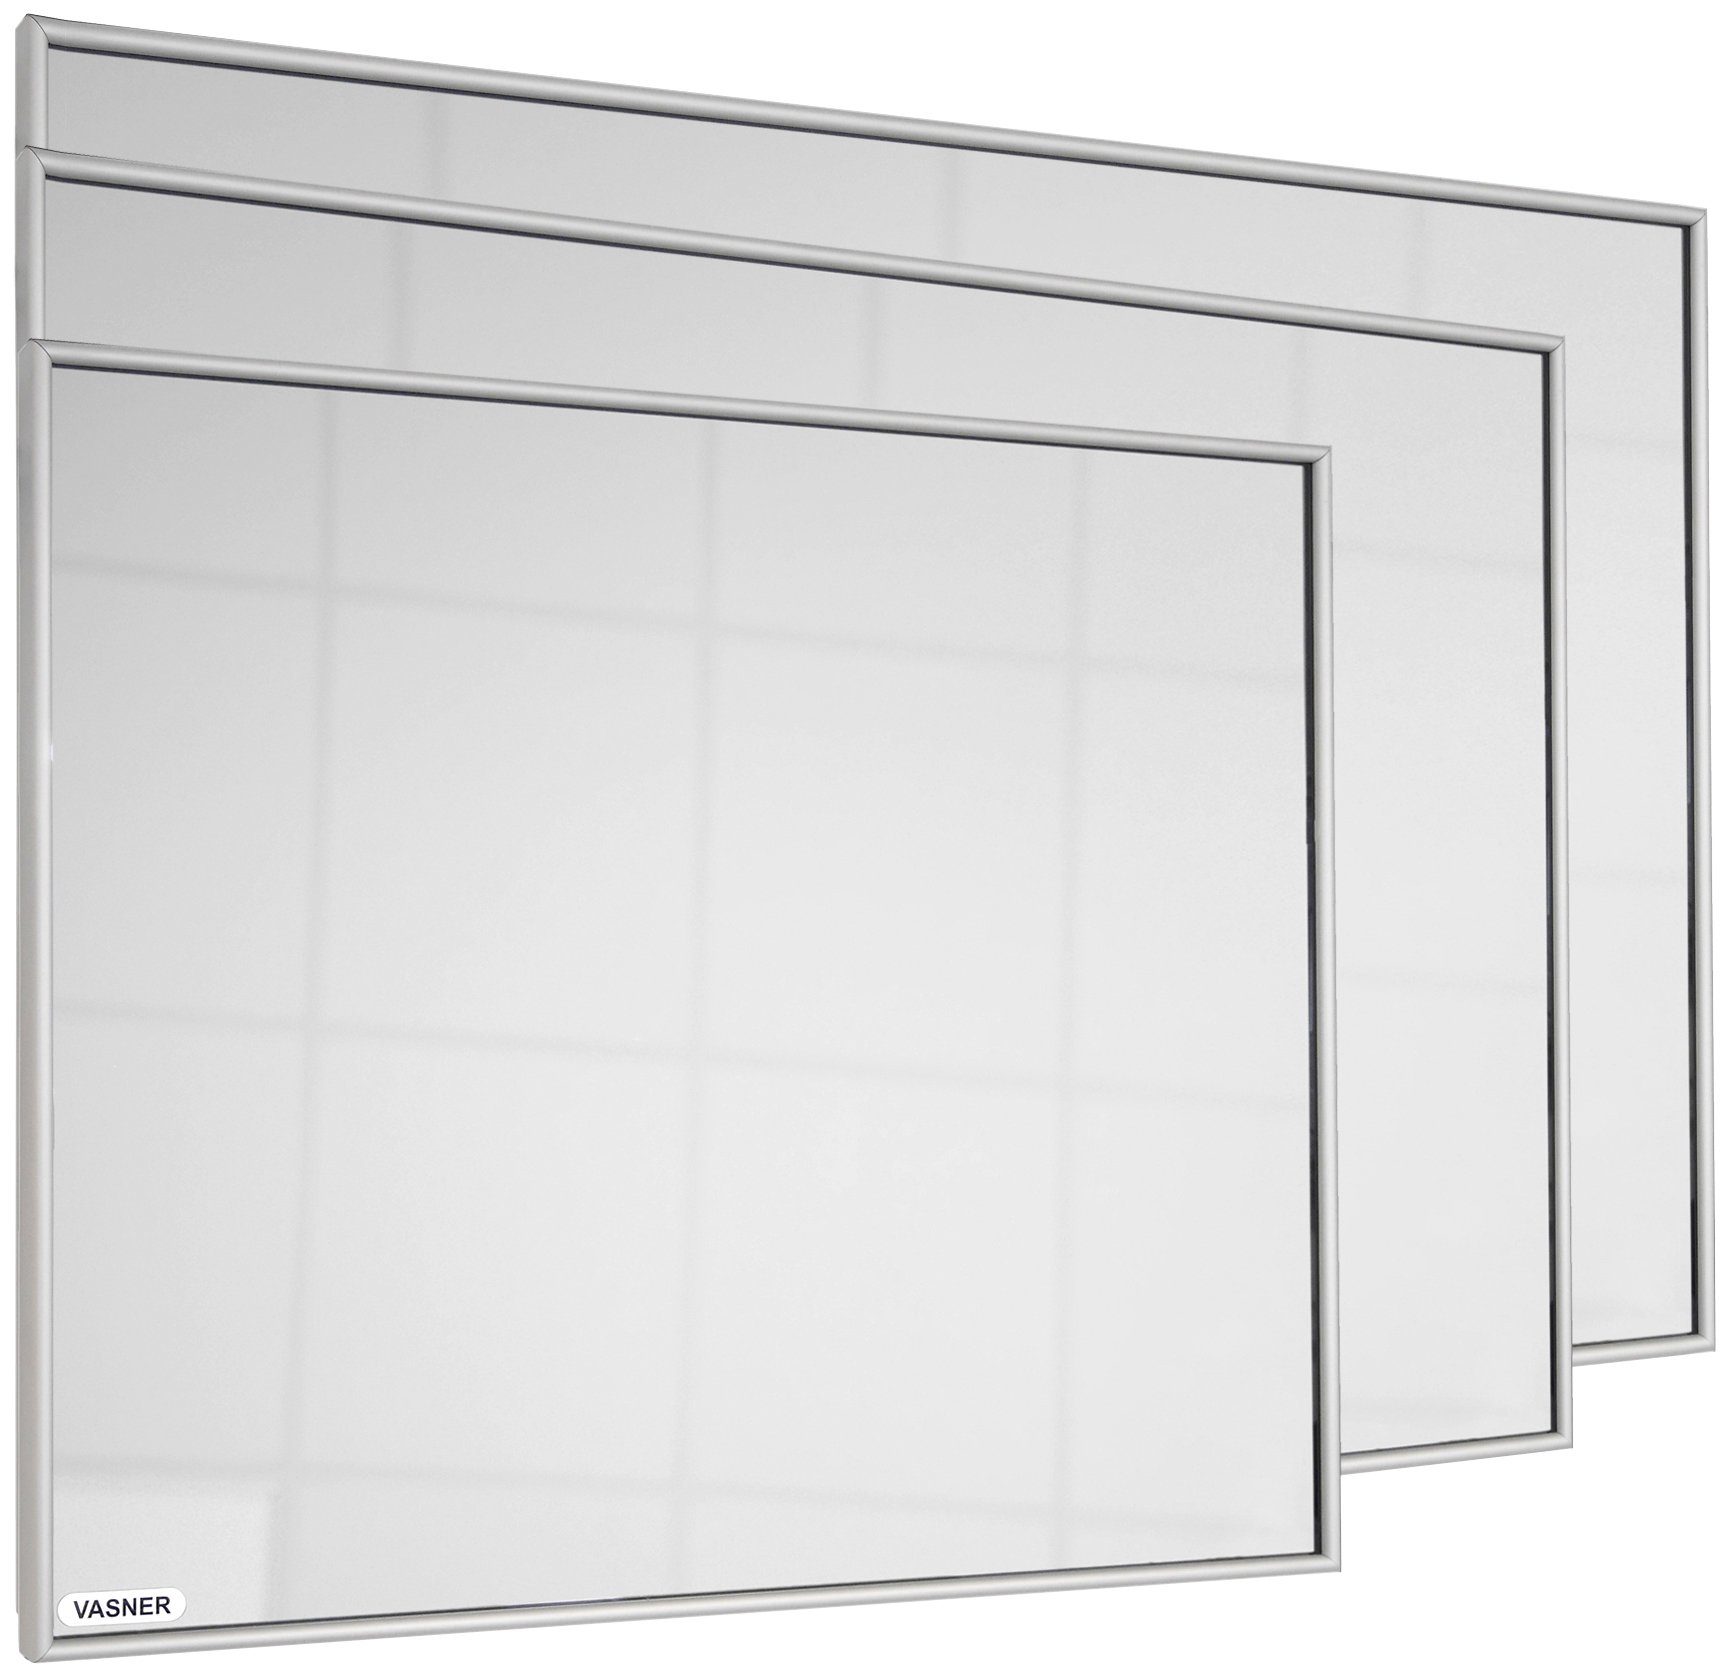 Zipris mit 400 Vasner Spiegelheizung S 400, Aluminium-Rahmen Infrarotheizung W,